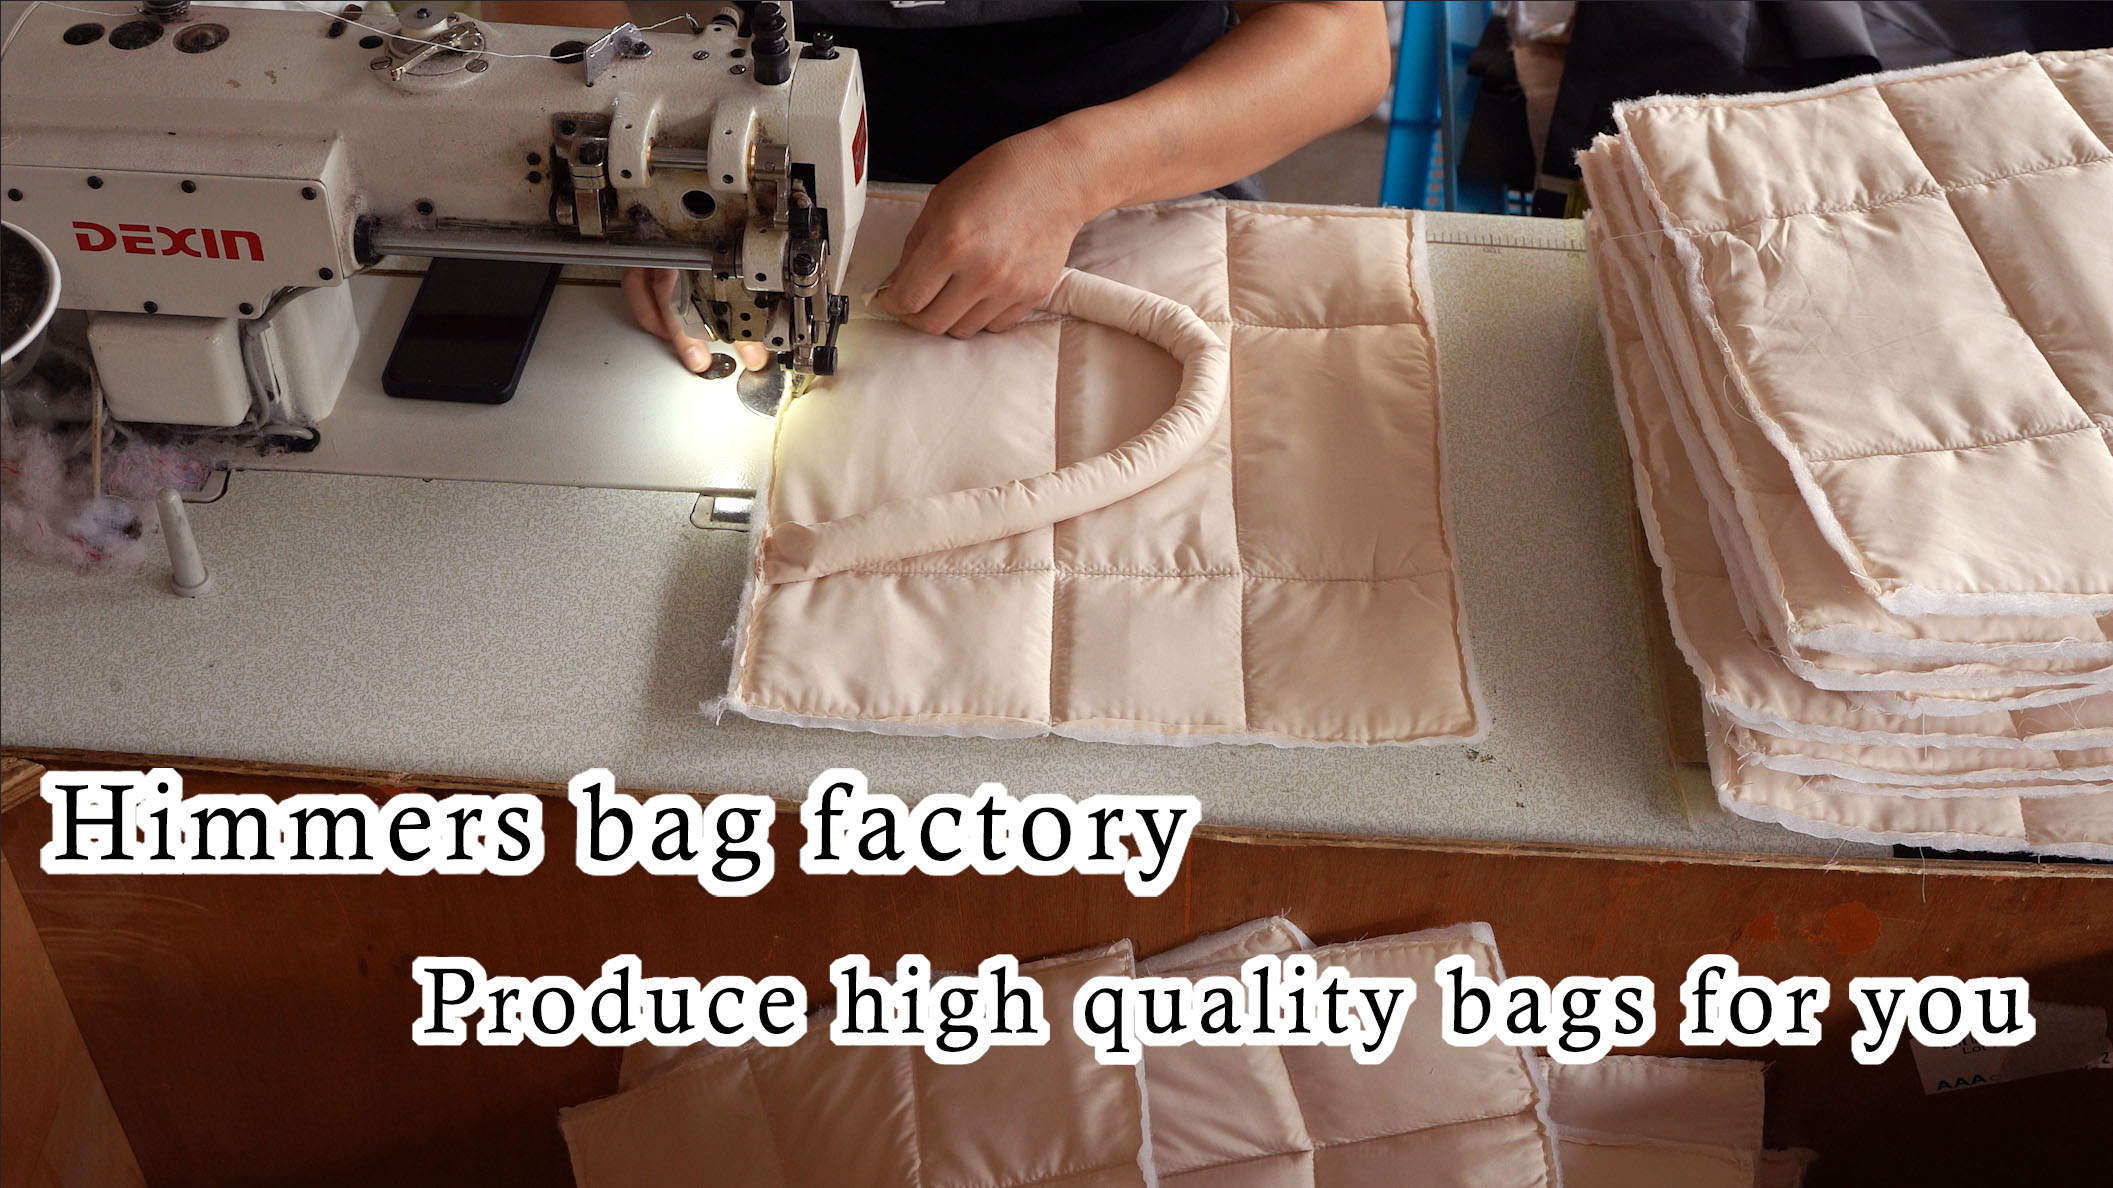 Usine de sacs Himmers - Produisez des sacs de haute qualité pour vous